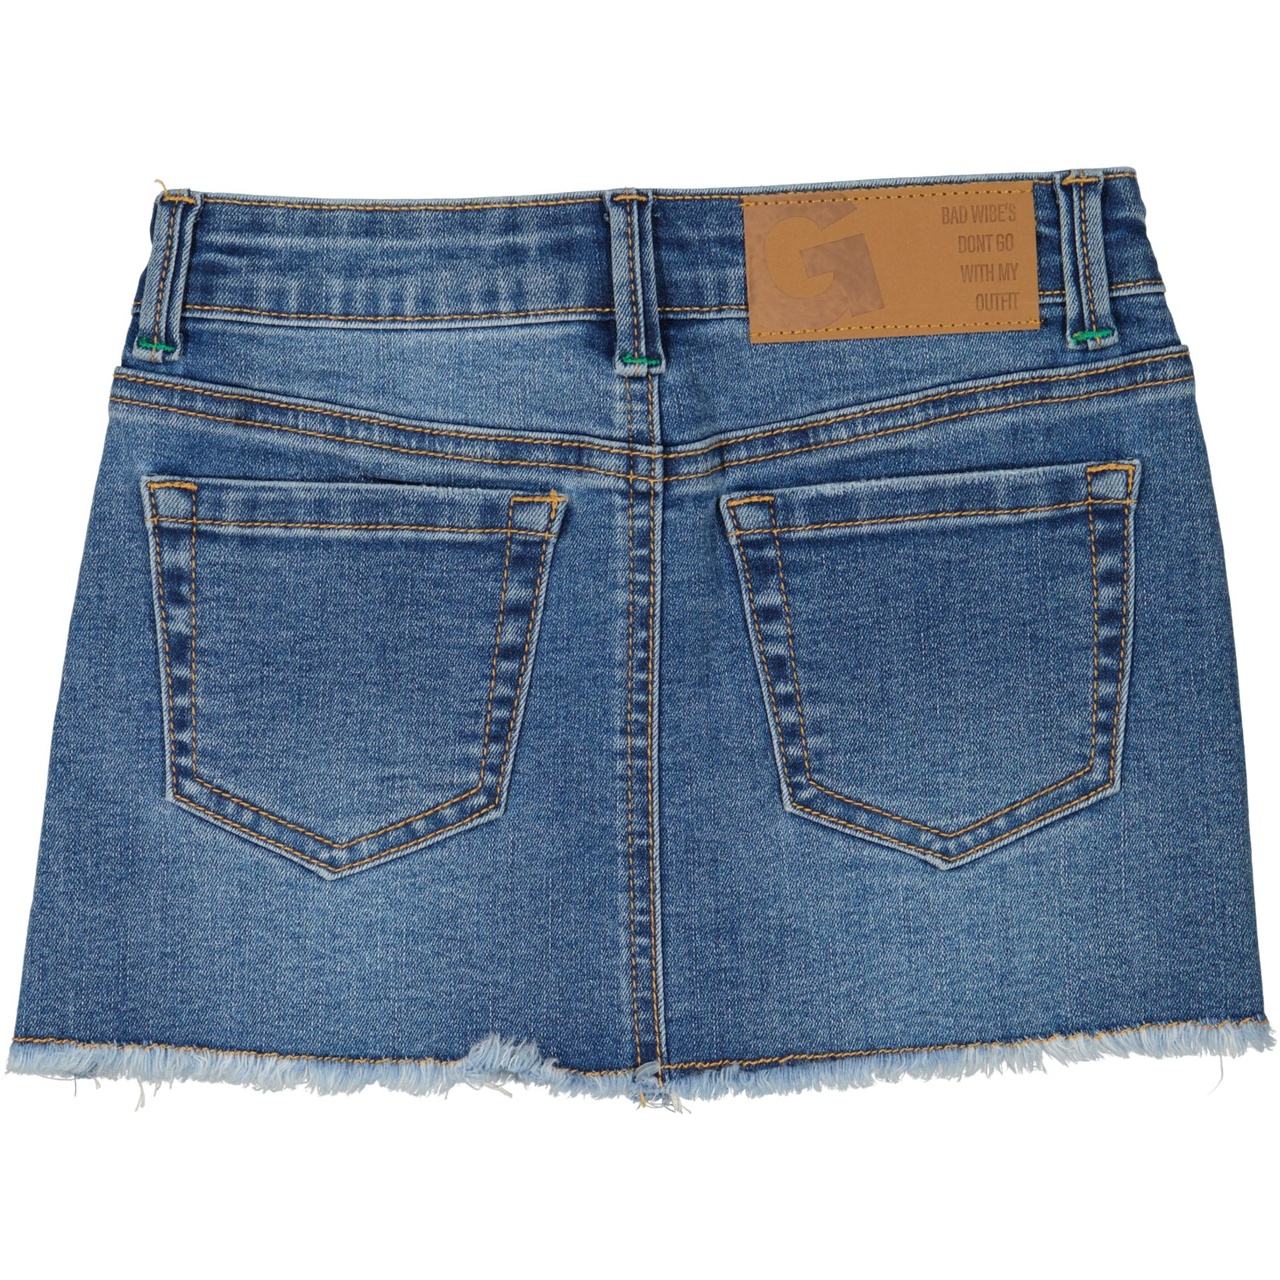 Jeans skirt Denim Sininen wash 110/116